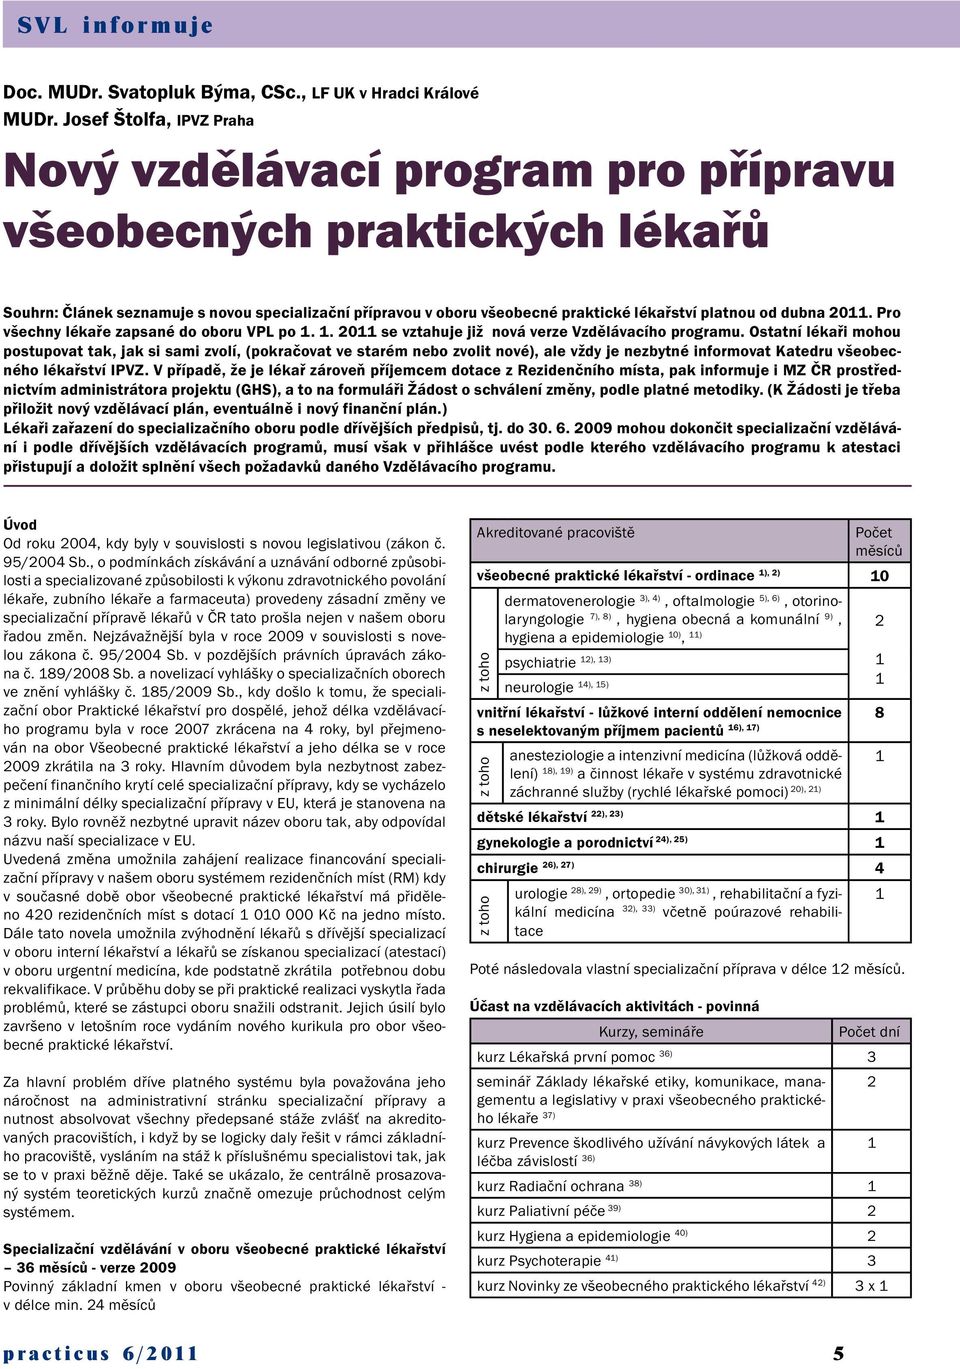 dubna 2011. Pro všechny lékaře zapsané do oboru VPL po 1. 1. 2011 se vztahuje již nová verze Vzdělávacího programu.